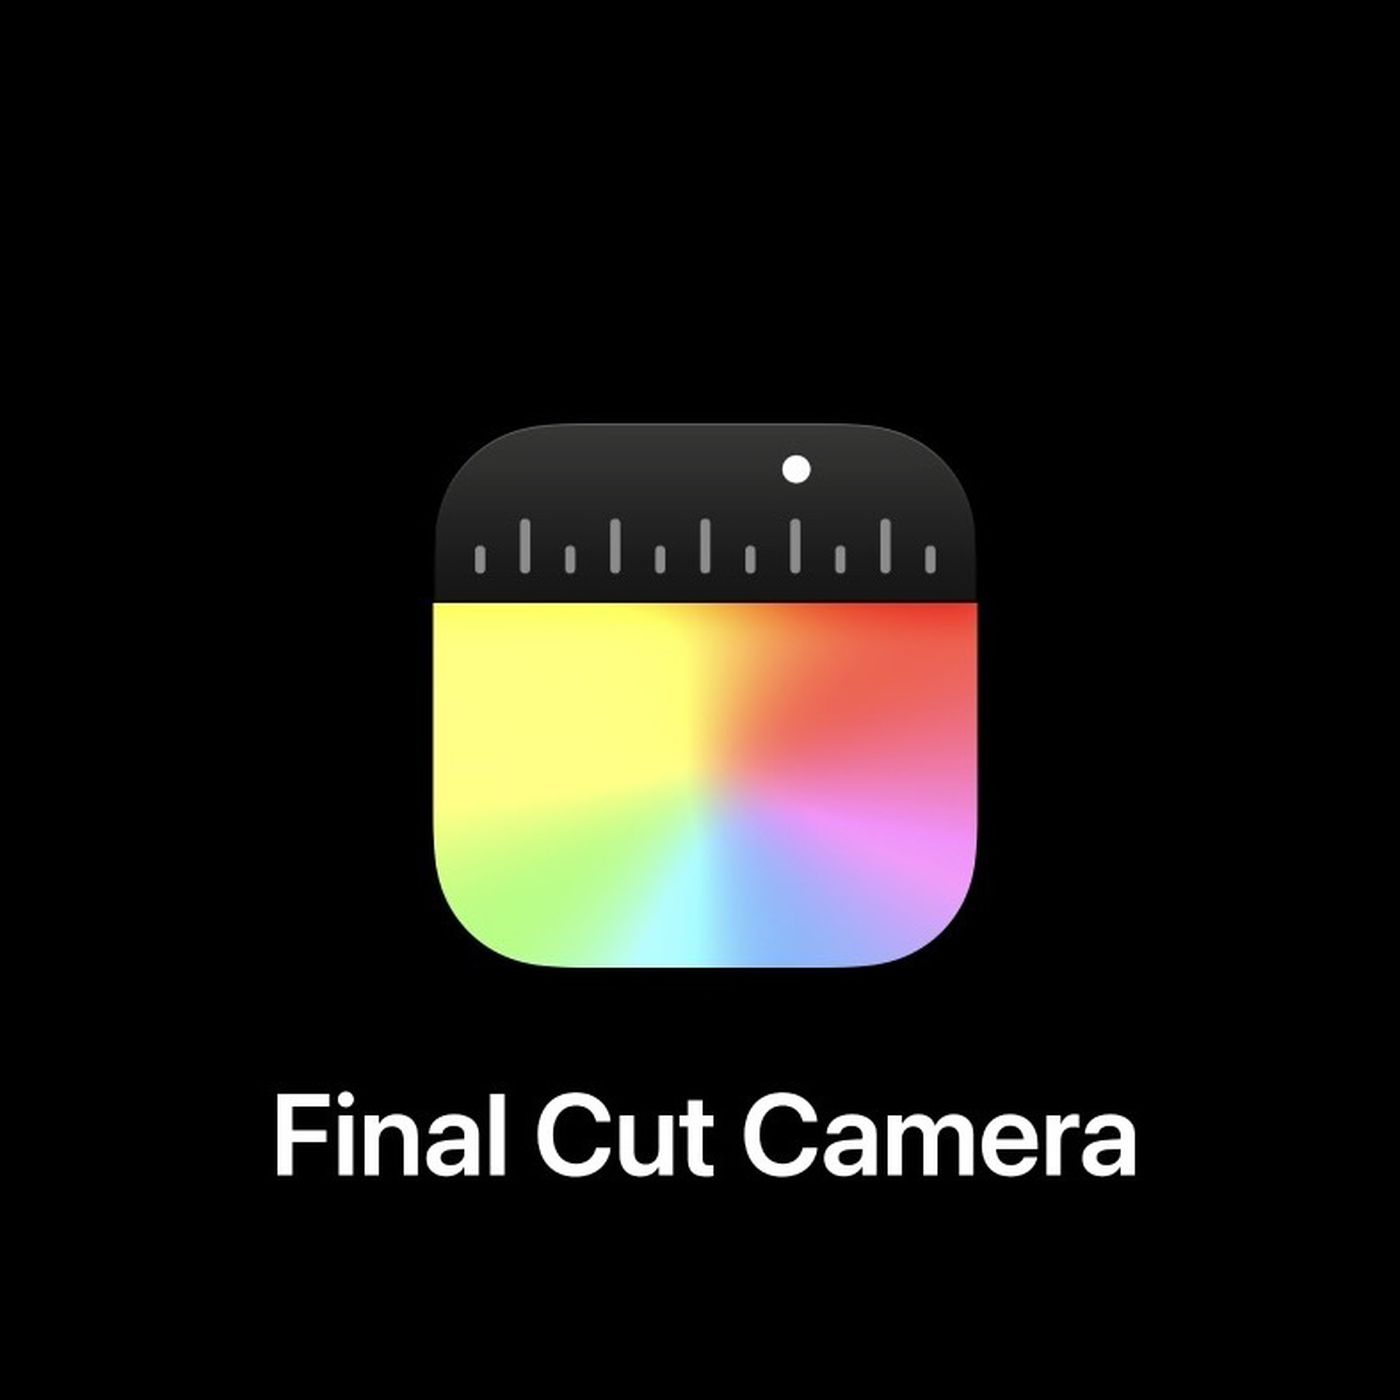 Apple iPhone ve iPad için yeni Final Cut Camera uygulamasını tanıttı